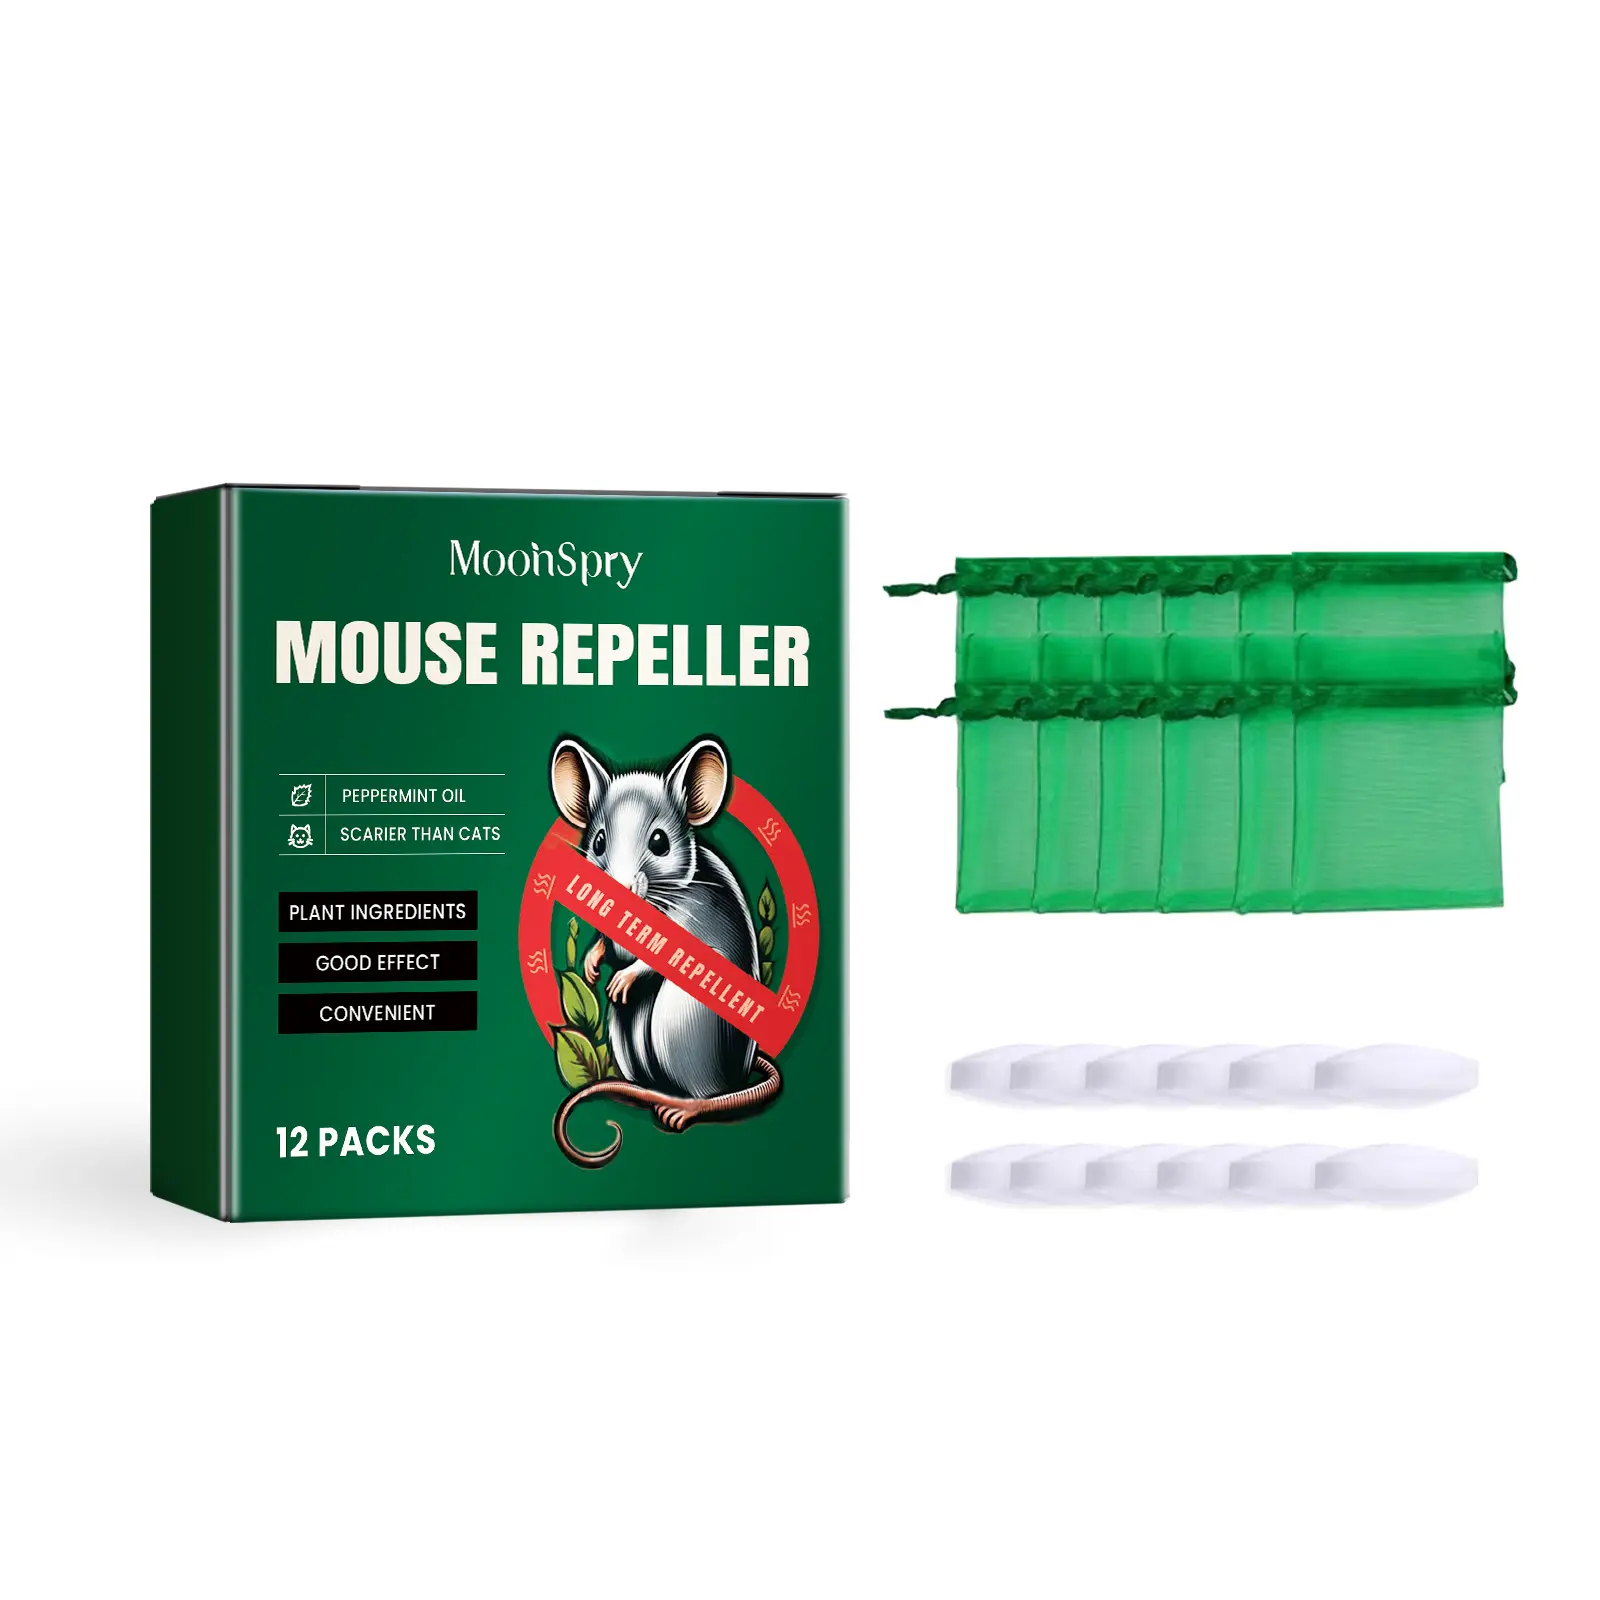 Bán buôn moonspry pha lê bóng rodent Repellent được sử dụng trong xe nhà bếp văn phòng kho